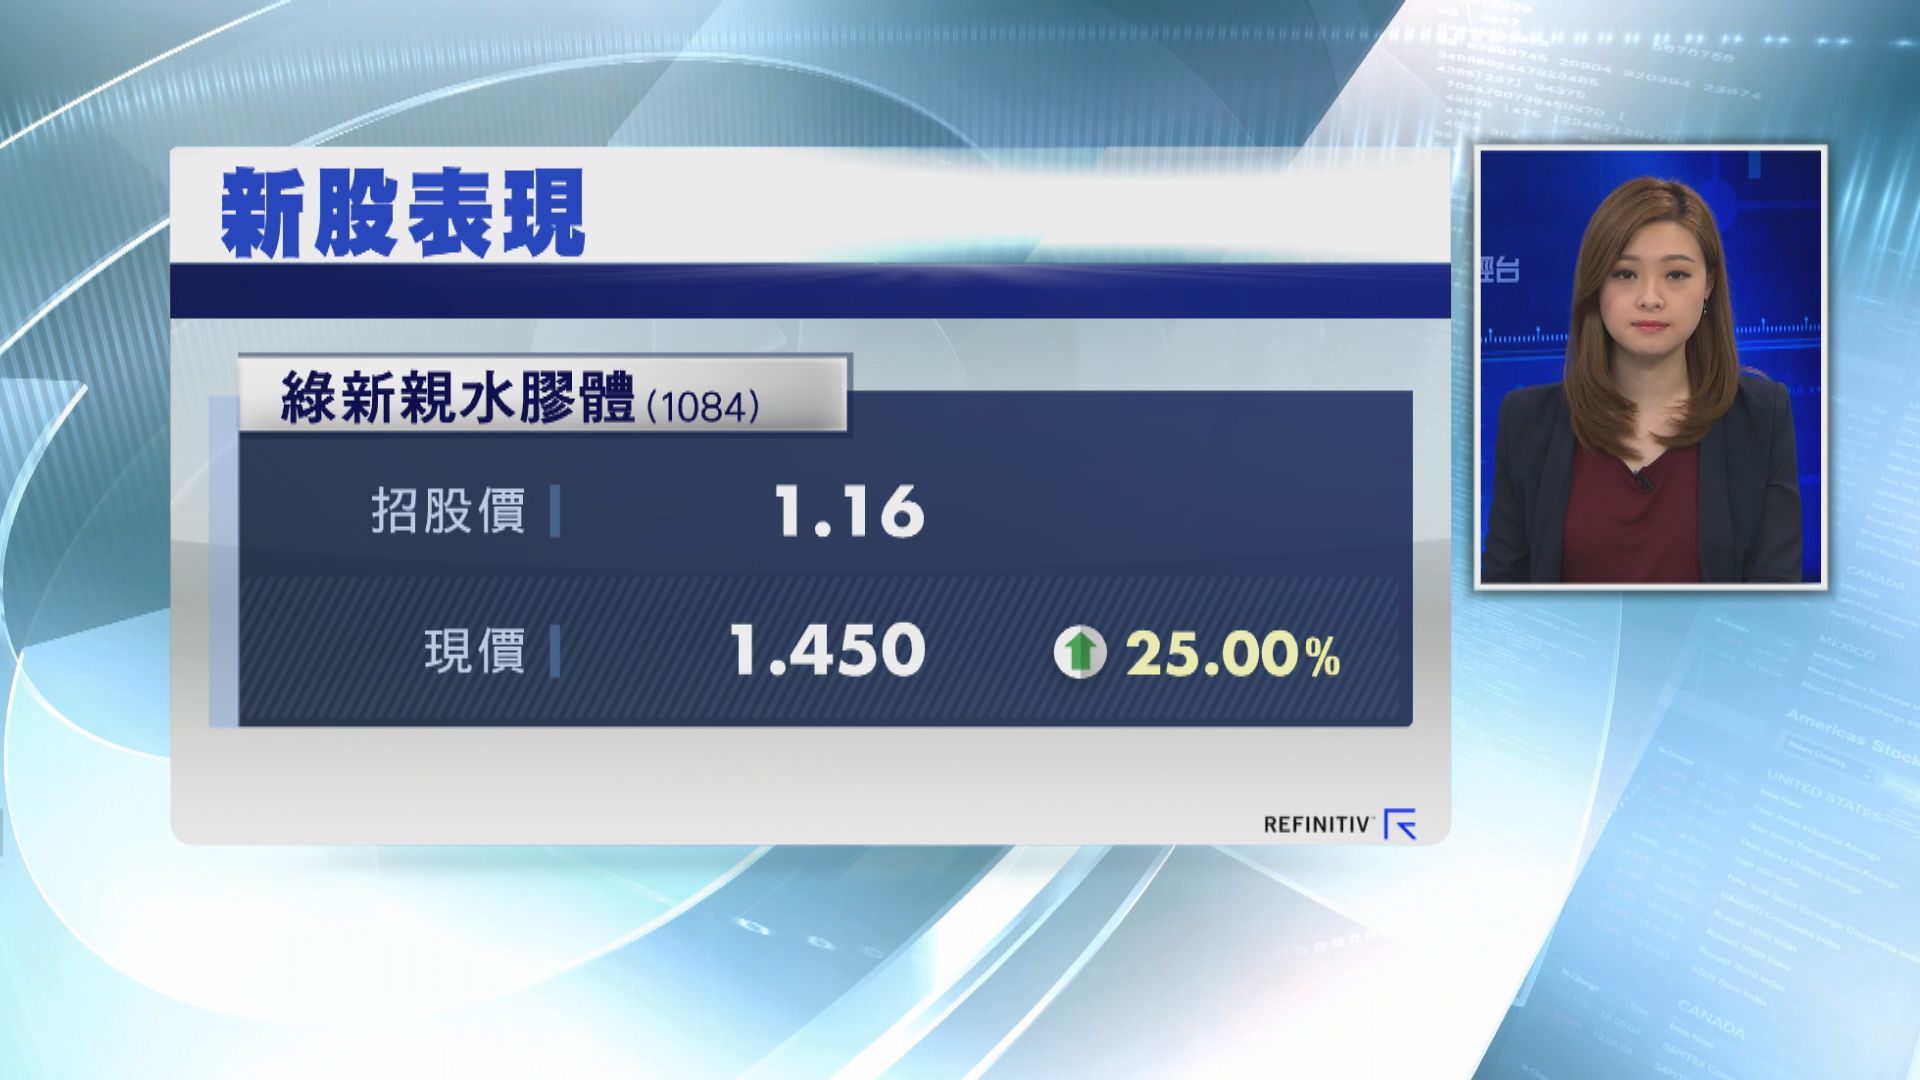 【首日掛牌】綠新親水膠體曾較招股價高逾52%